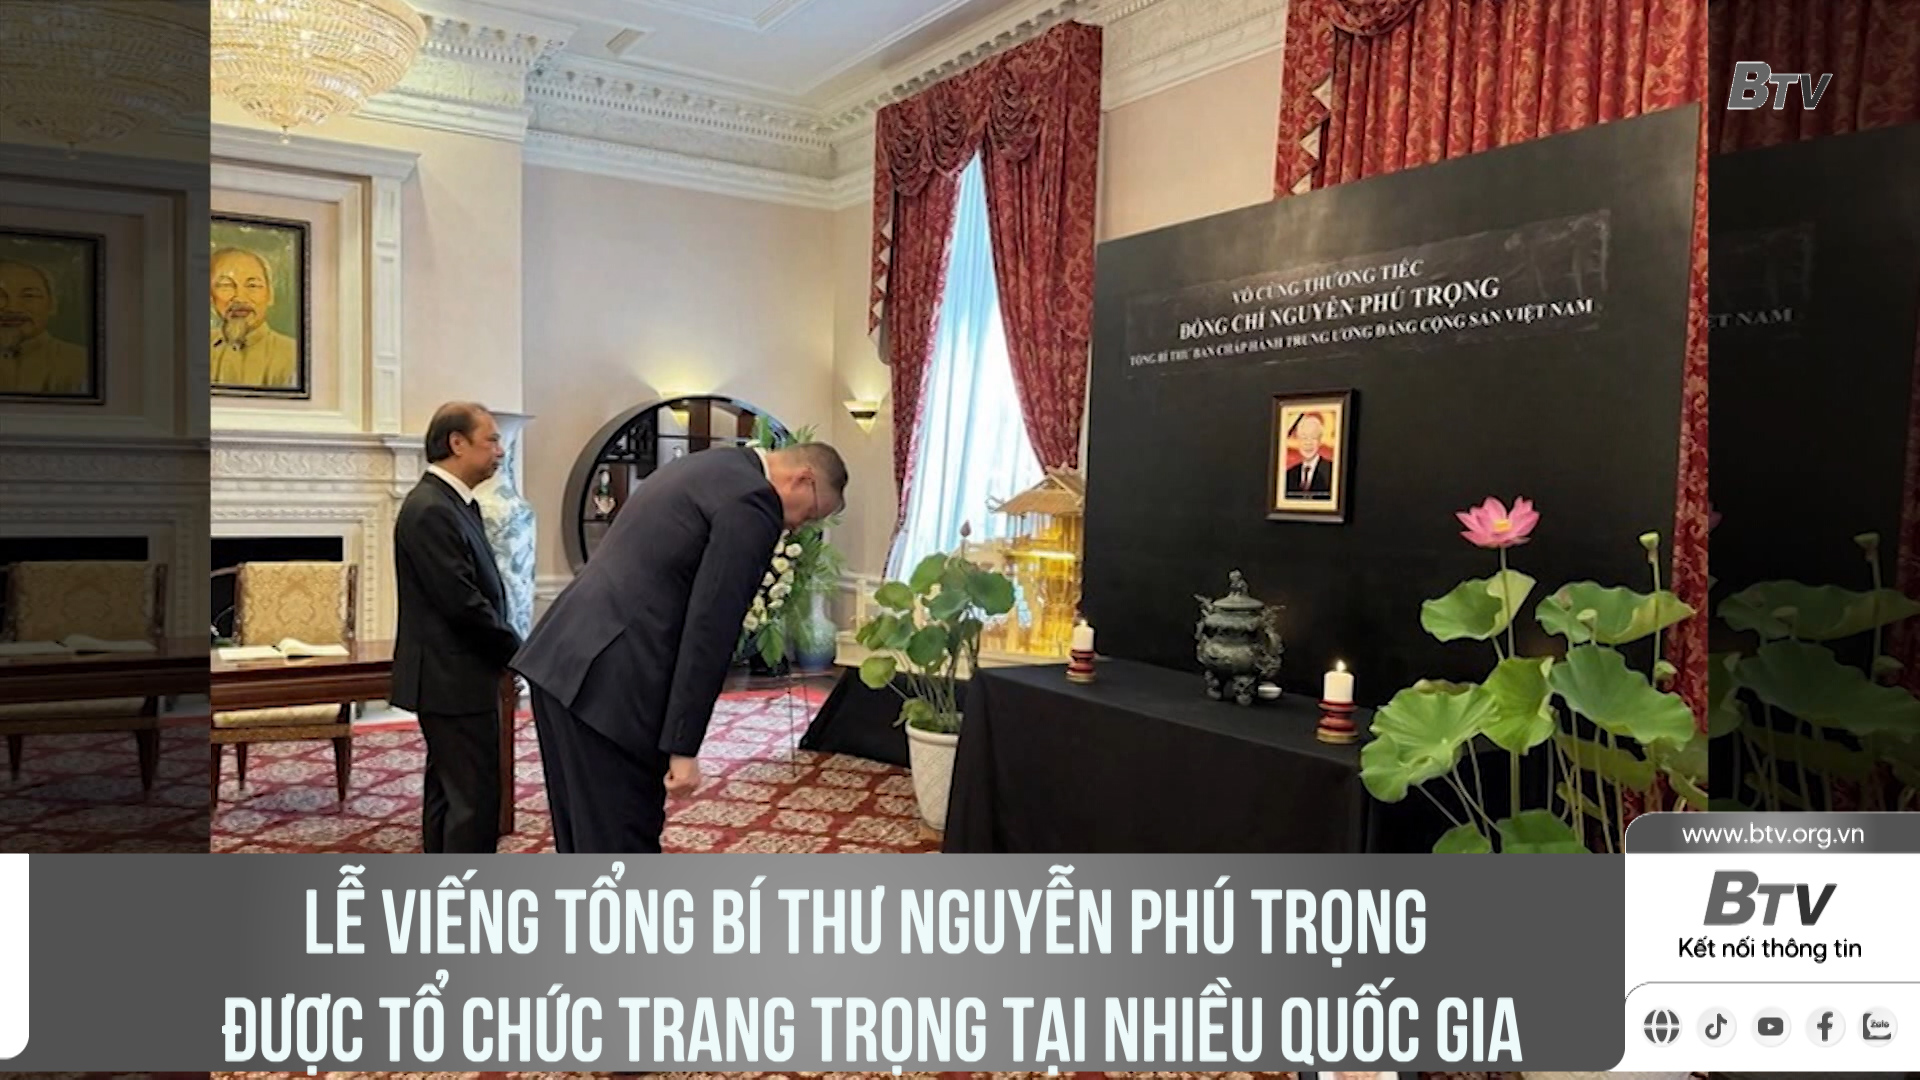 Lễ viếng Tổng Bí thư Nguyễn Phú Trọng được tổ chức trang trọng tại nhiều Quốc gia